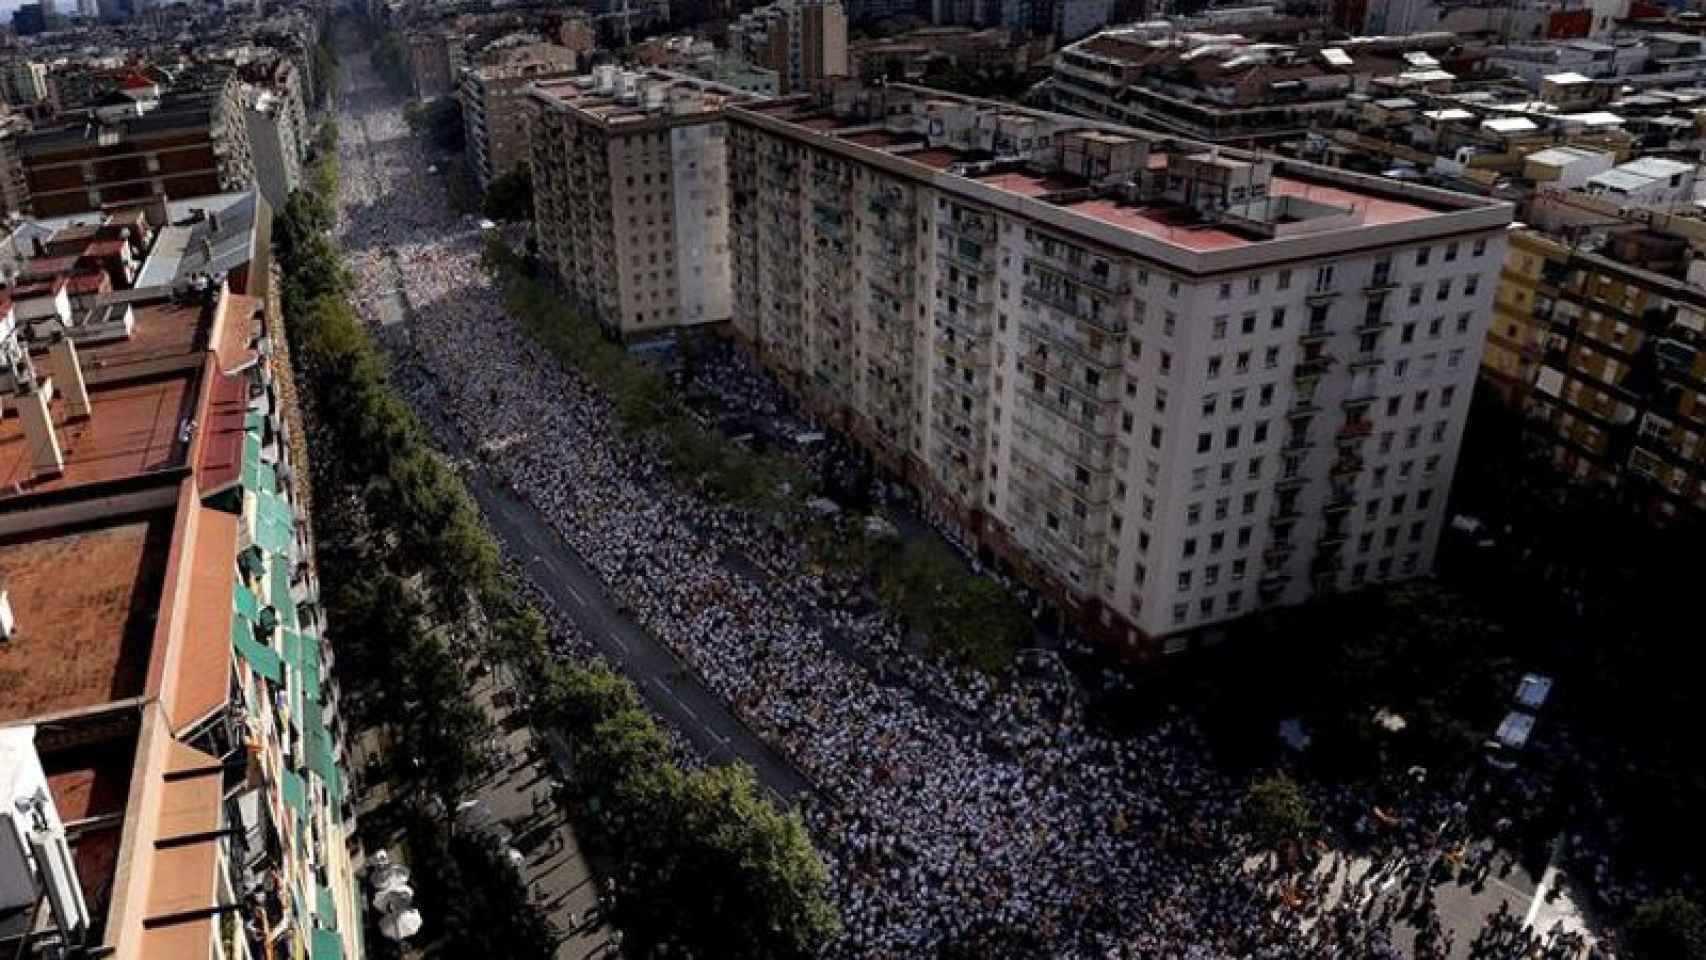 Imagen previa al inicio de la manifestación independentista de este viernes en Barcelona.